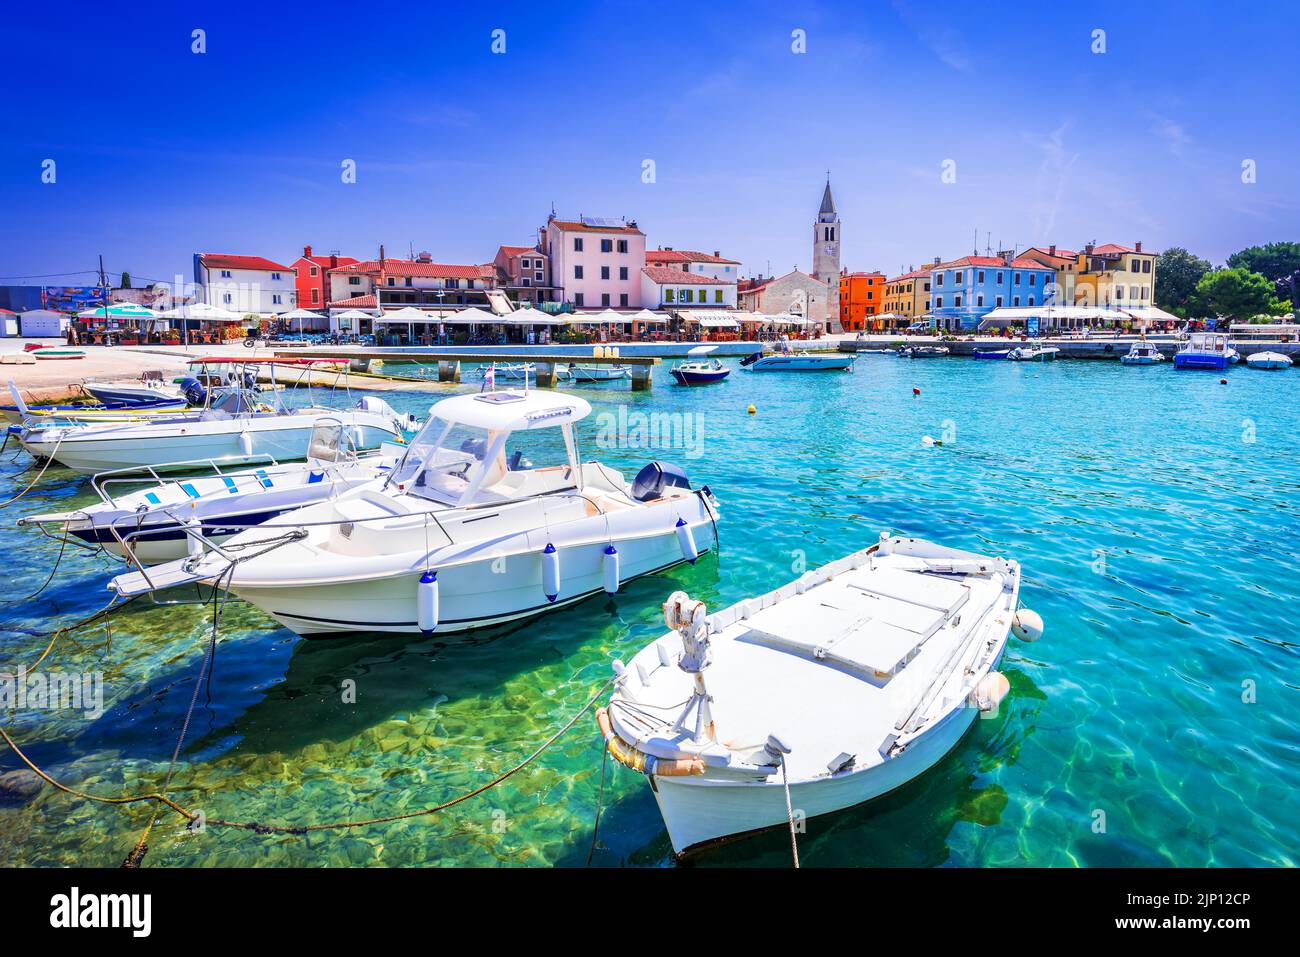 Fazana, Croatia. Marina of idyllic small town Fazana, waterfront view on Istria peninsula of Adriatic Sea. Stock Photo